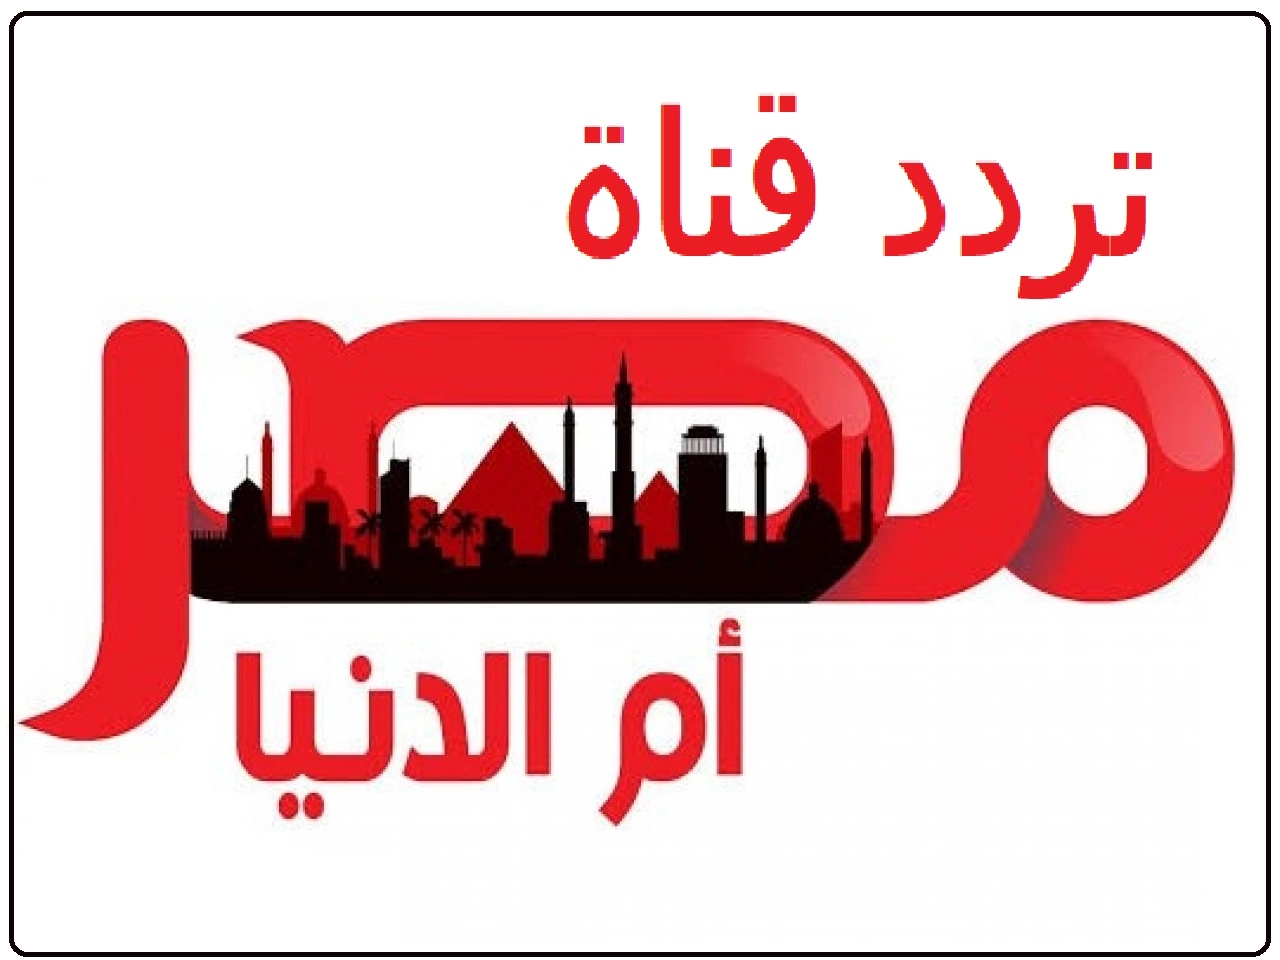 تردد قناة مصر ام الدنيا الجديد 2023